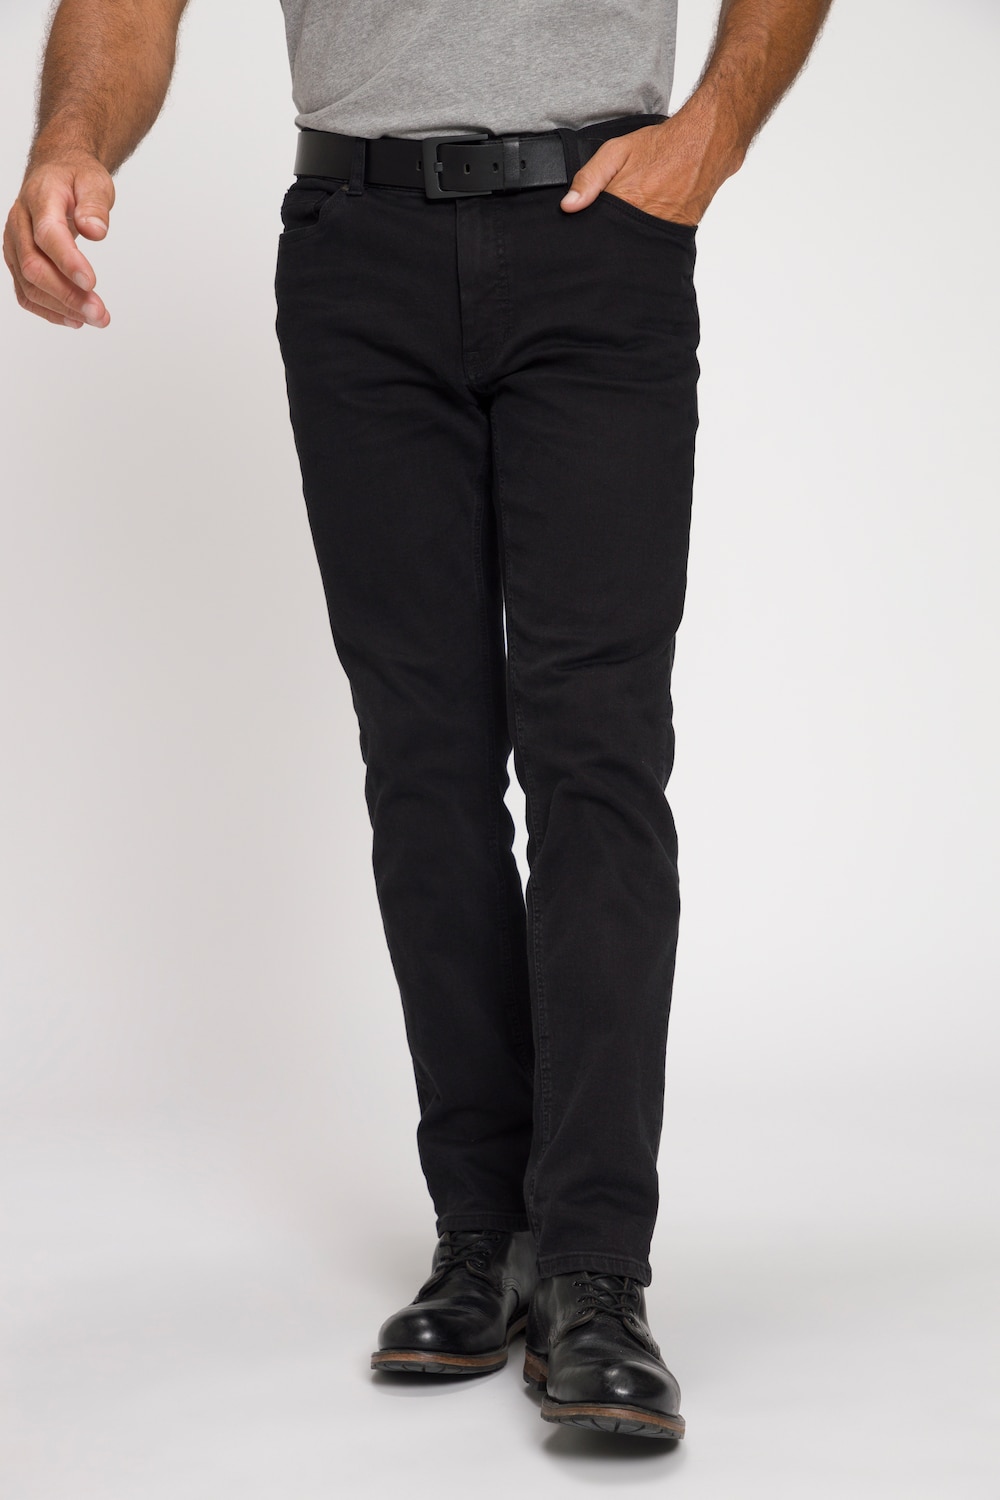 grandes tailles jean en denim. coupe straight fit et technologie flexnamic® - jusqu'au 72/37, hommes, noir, taille: 28, coton, jp1880